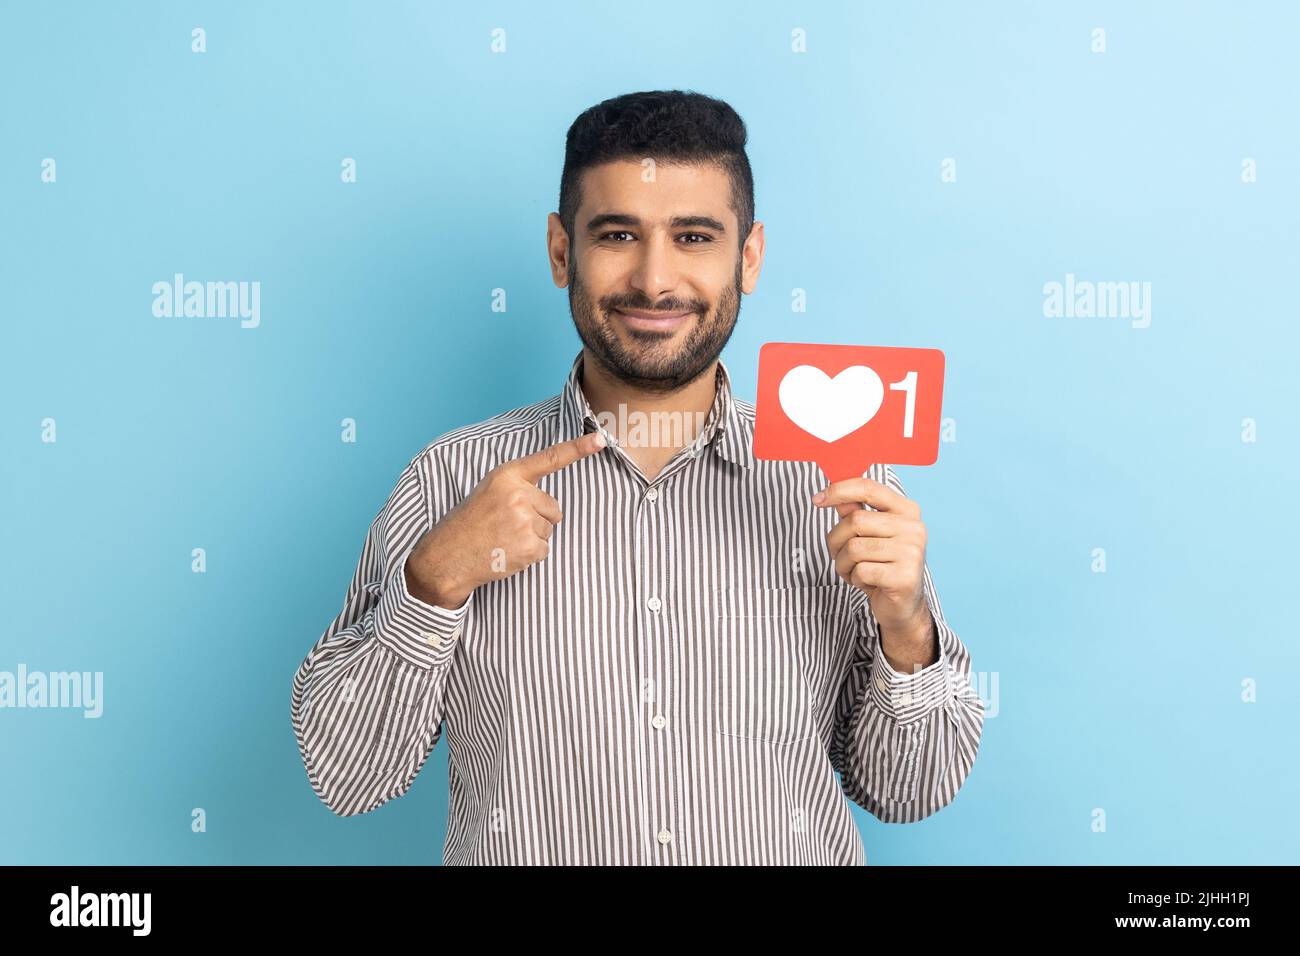 Internet-Blogging. Porträt eines fröhlichen Mannes, der wie ein Symbol auf das Herz zeigt und empfiehlt, auf die Social-Media-Schaltfläche zu klicken und ein gestreiftes Hemd zu tragen. Innenaufnahme des Studios isoliert auf blauem Hintergrund. Stockfoto